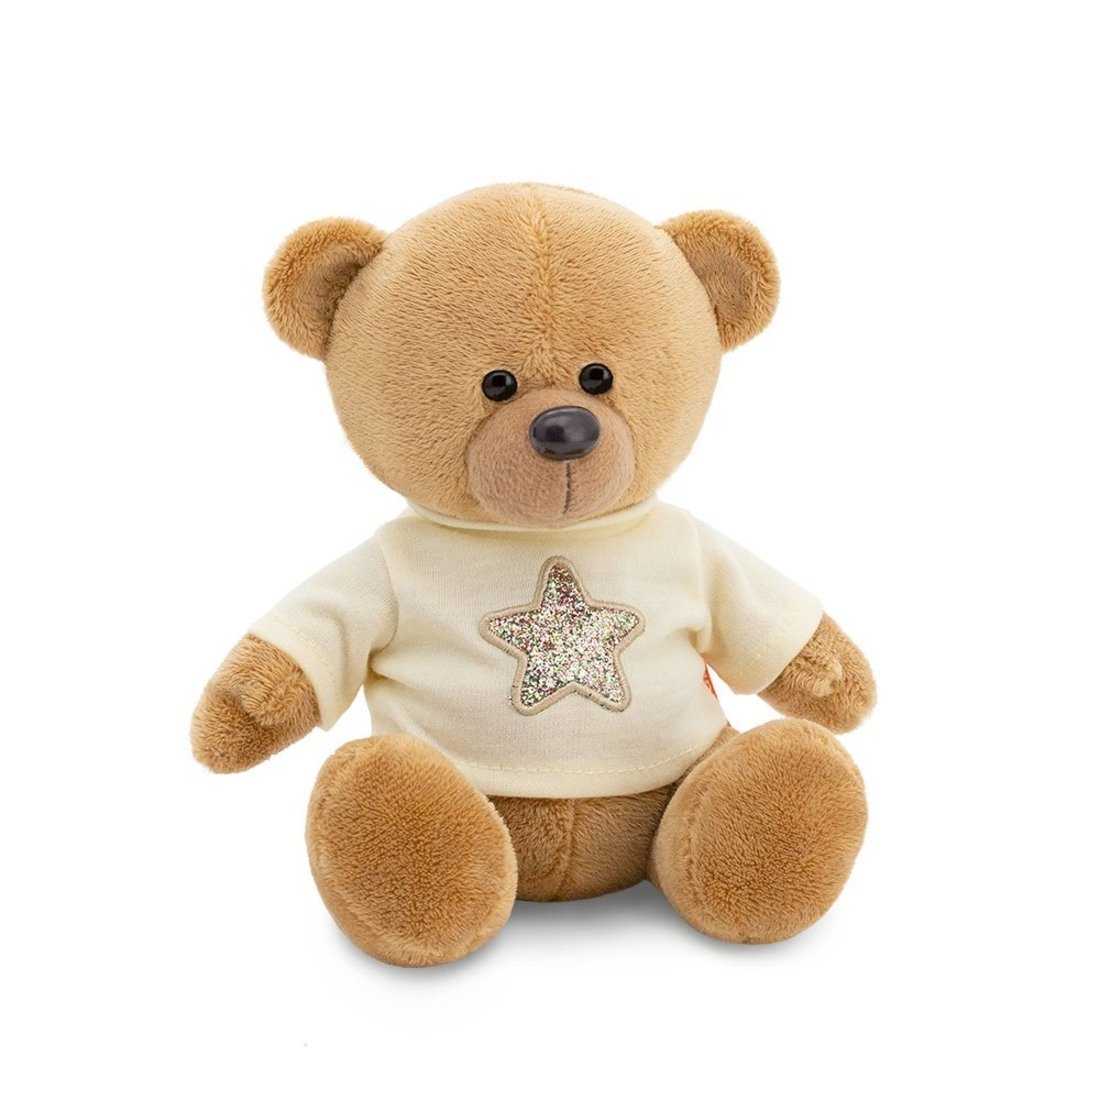 Мягкая игрушка Медведь Топтыжкин коричневый Звезда 25 см